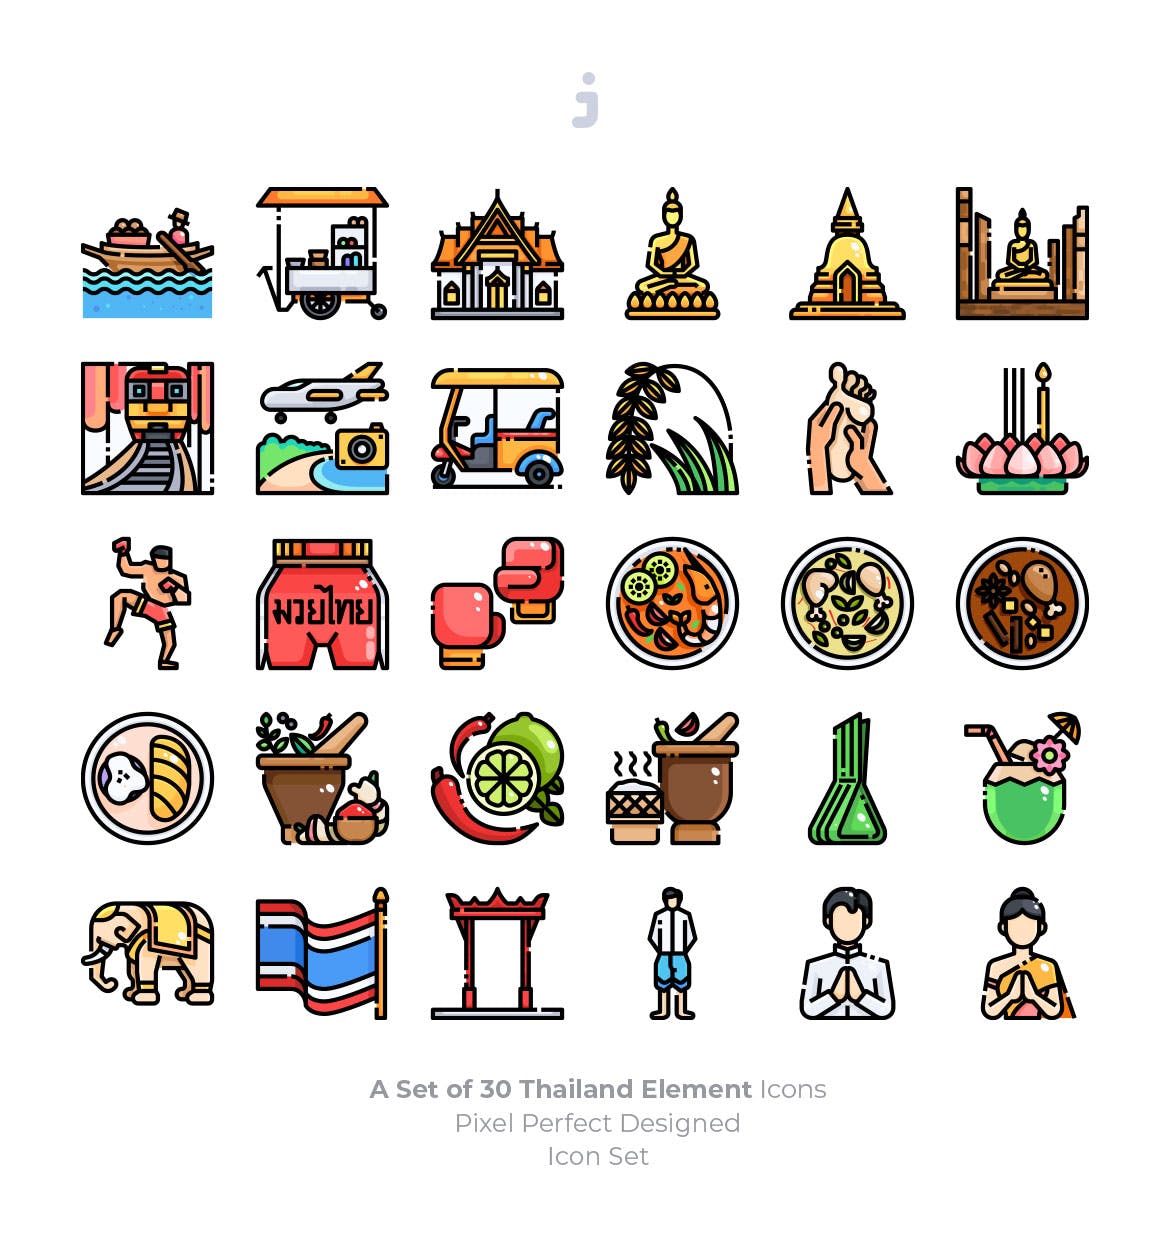 30枚泰国元素矢量图标素材 30 Thailand Element Icons插图(1)